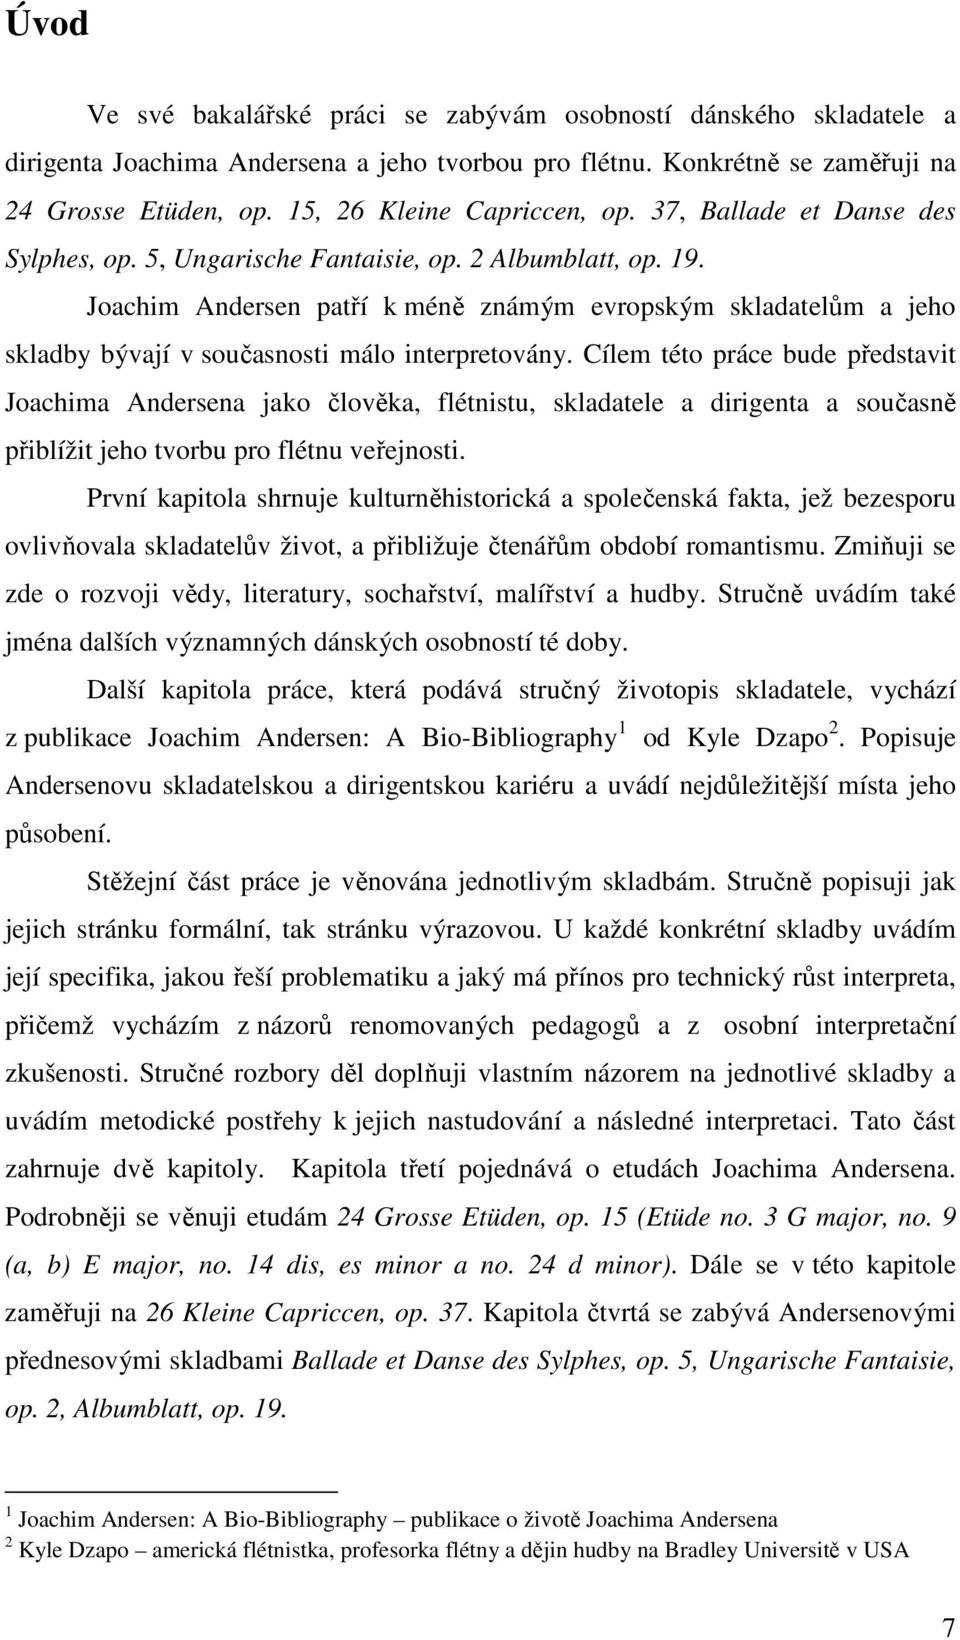 Joachim Andersen a jeho tvorba pro flétnu - PDF Stažení zdarma